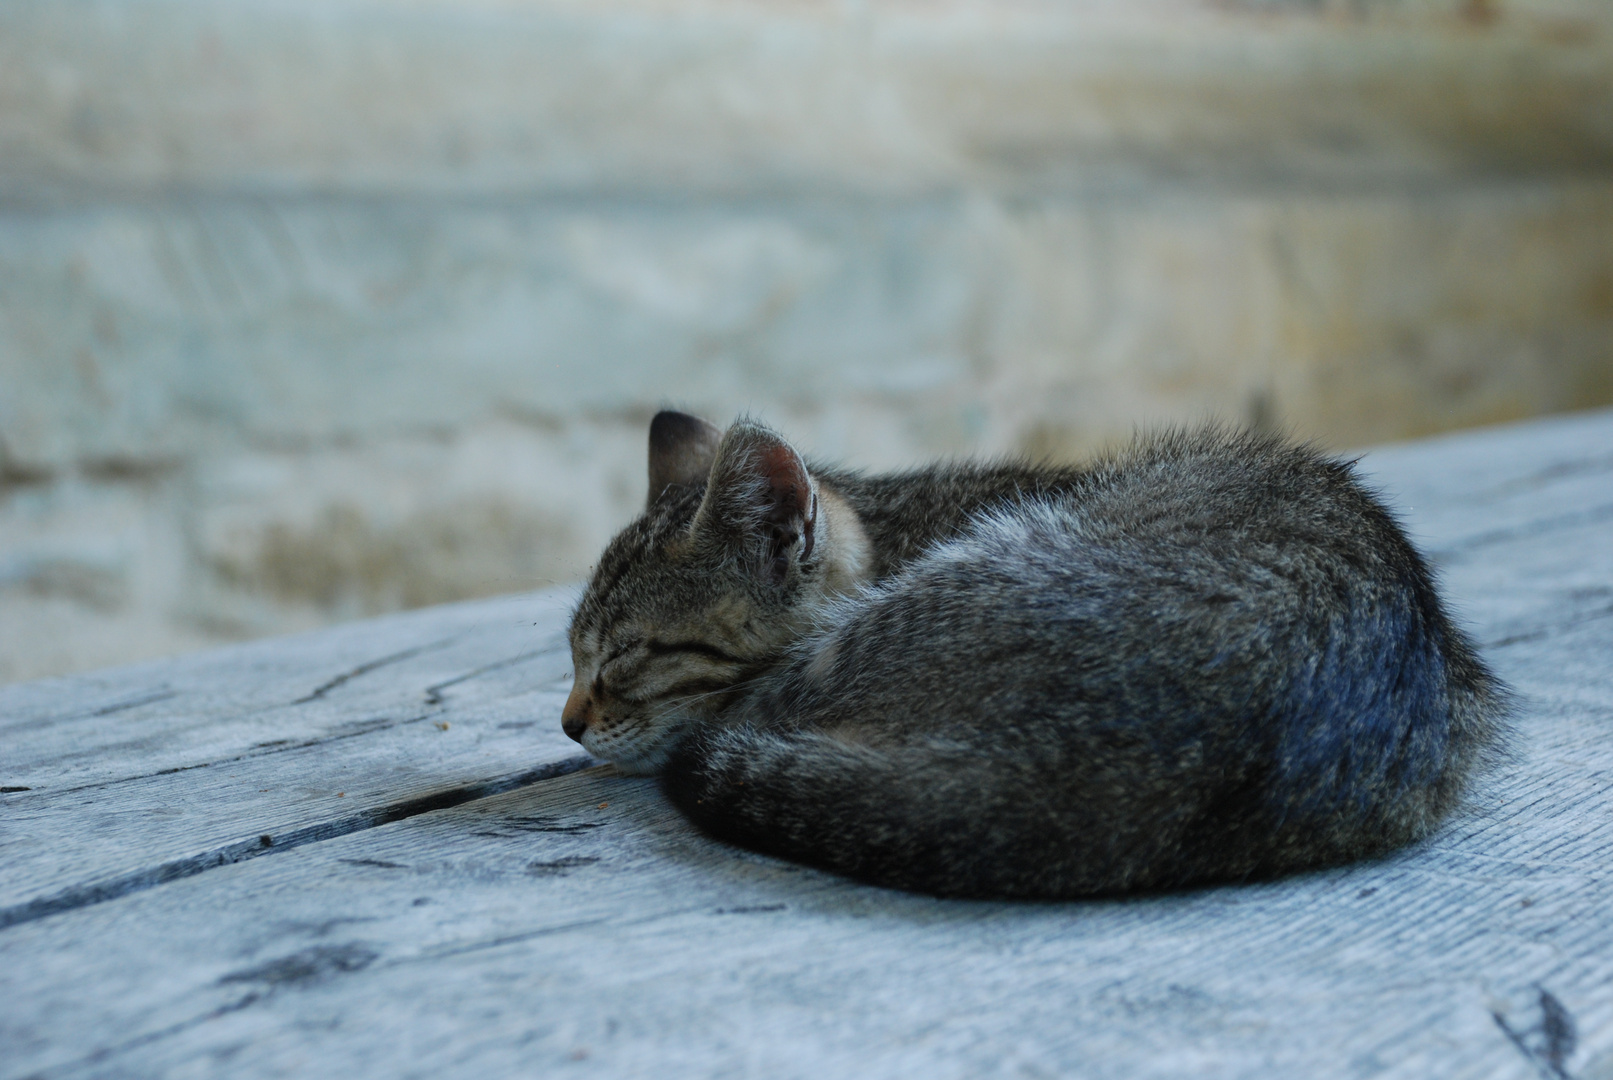 Sleeping cat II